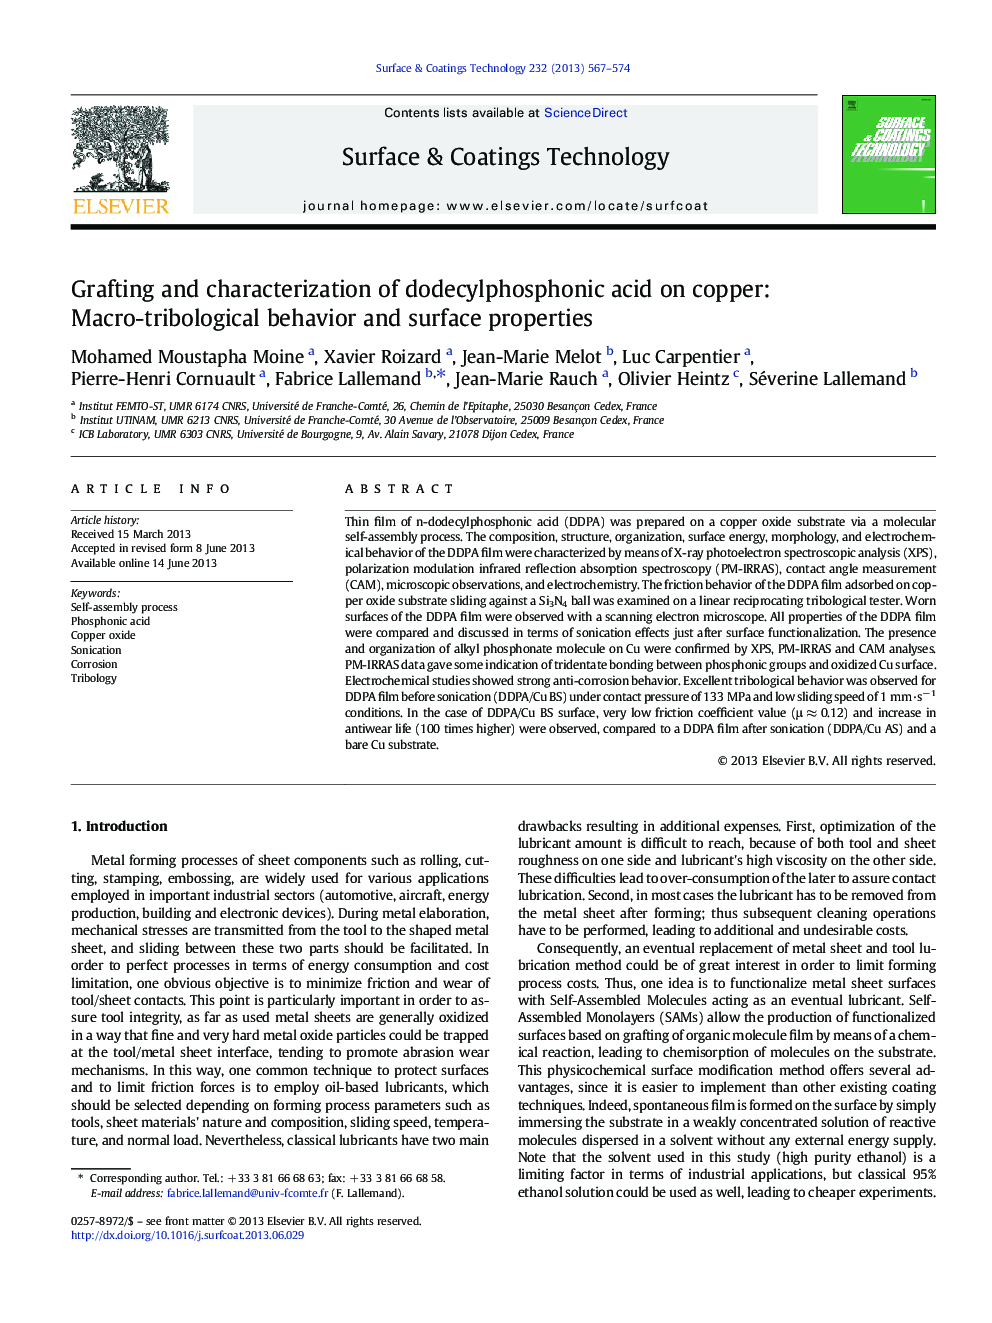 پیوند و خصوصی سازی اسید دودسیل فسفونیک بر روی مس: رفتار ماکرو تریبولوژیک و خواص سطح 